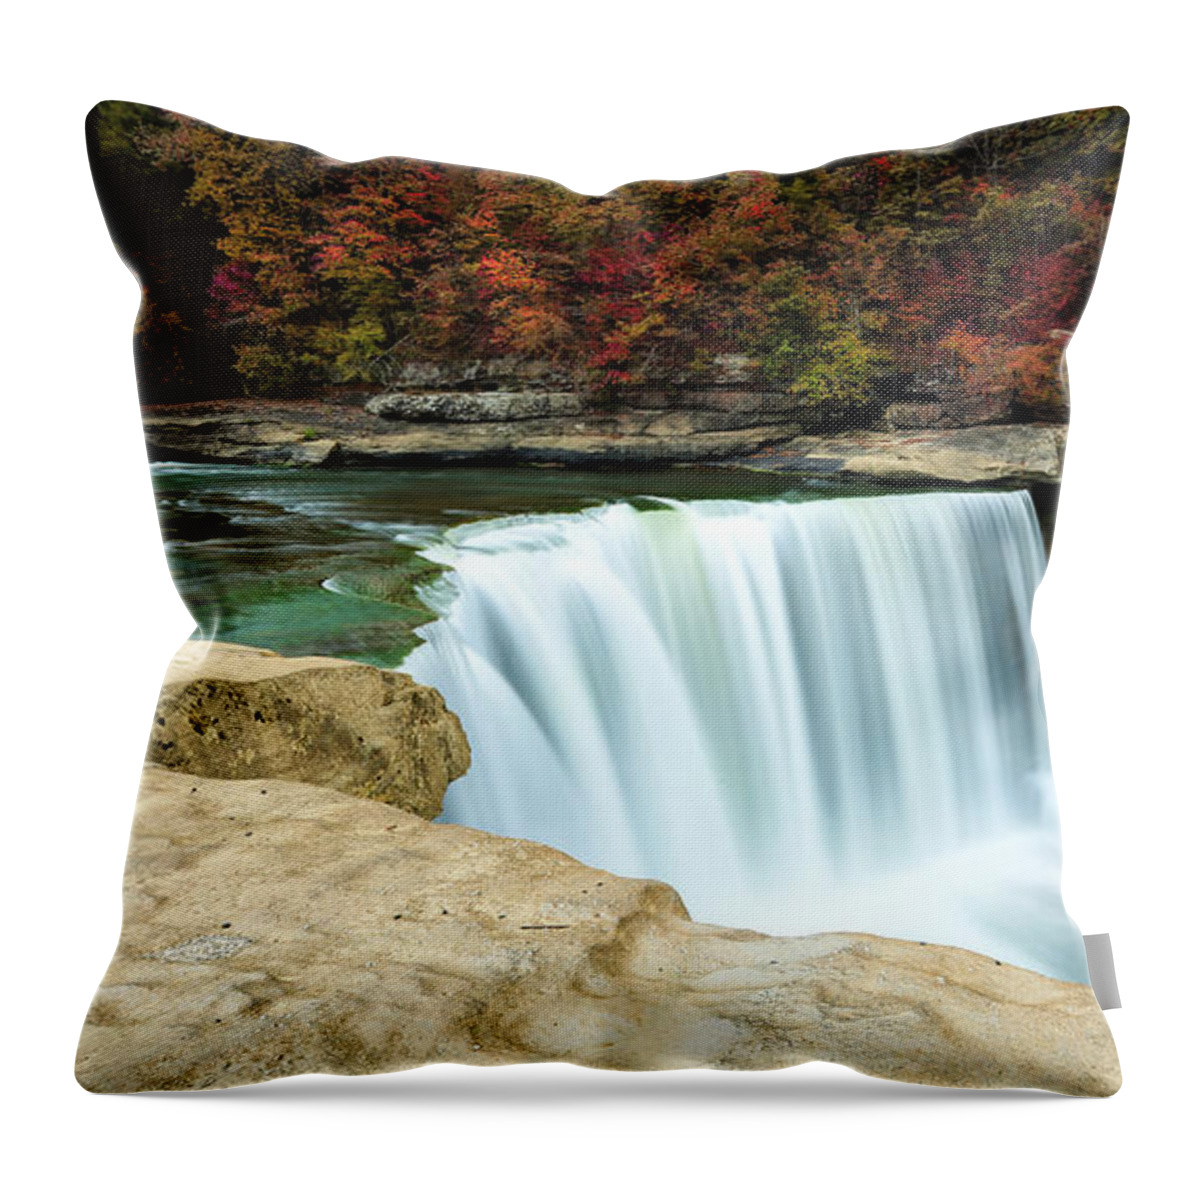 Autumn At Cumberland Falls Throw Pillow featuring the photograph Autumn at Cumberland Falls by Jaki Miller